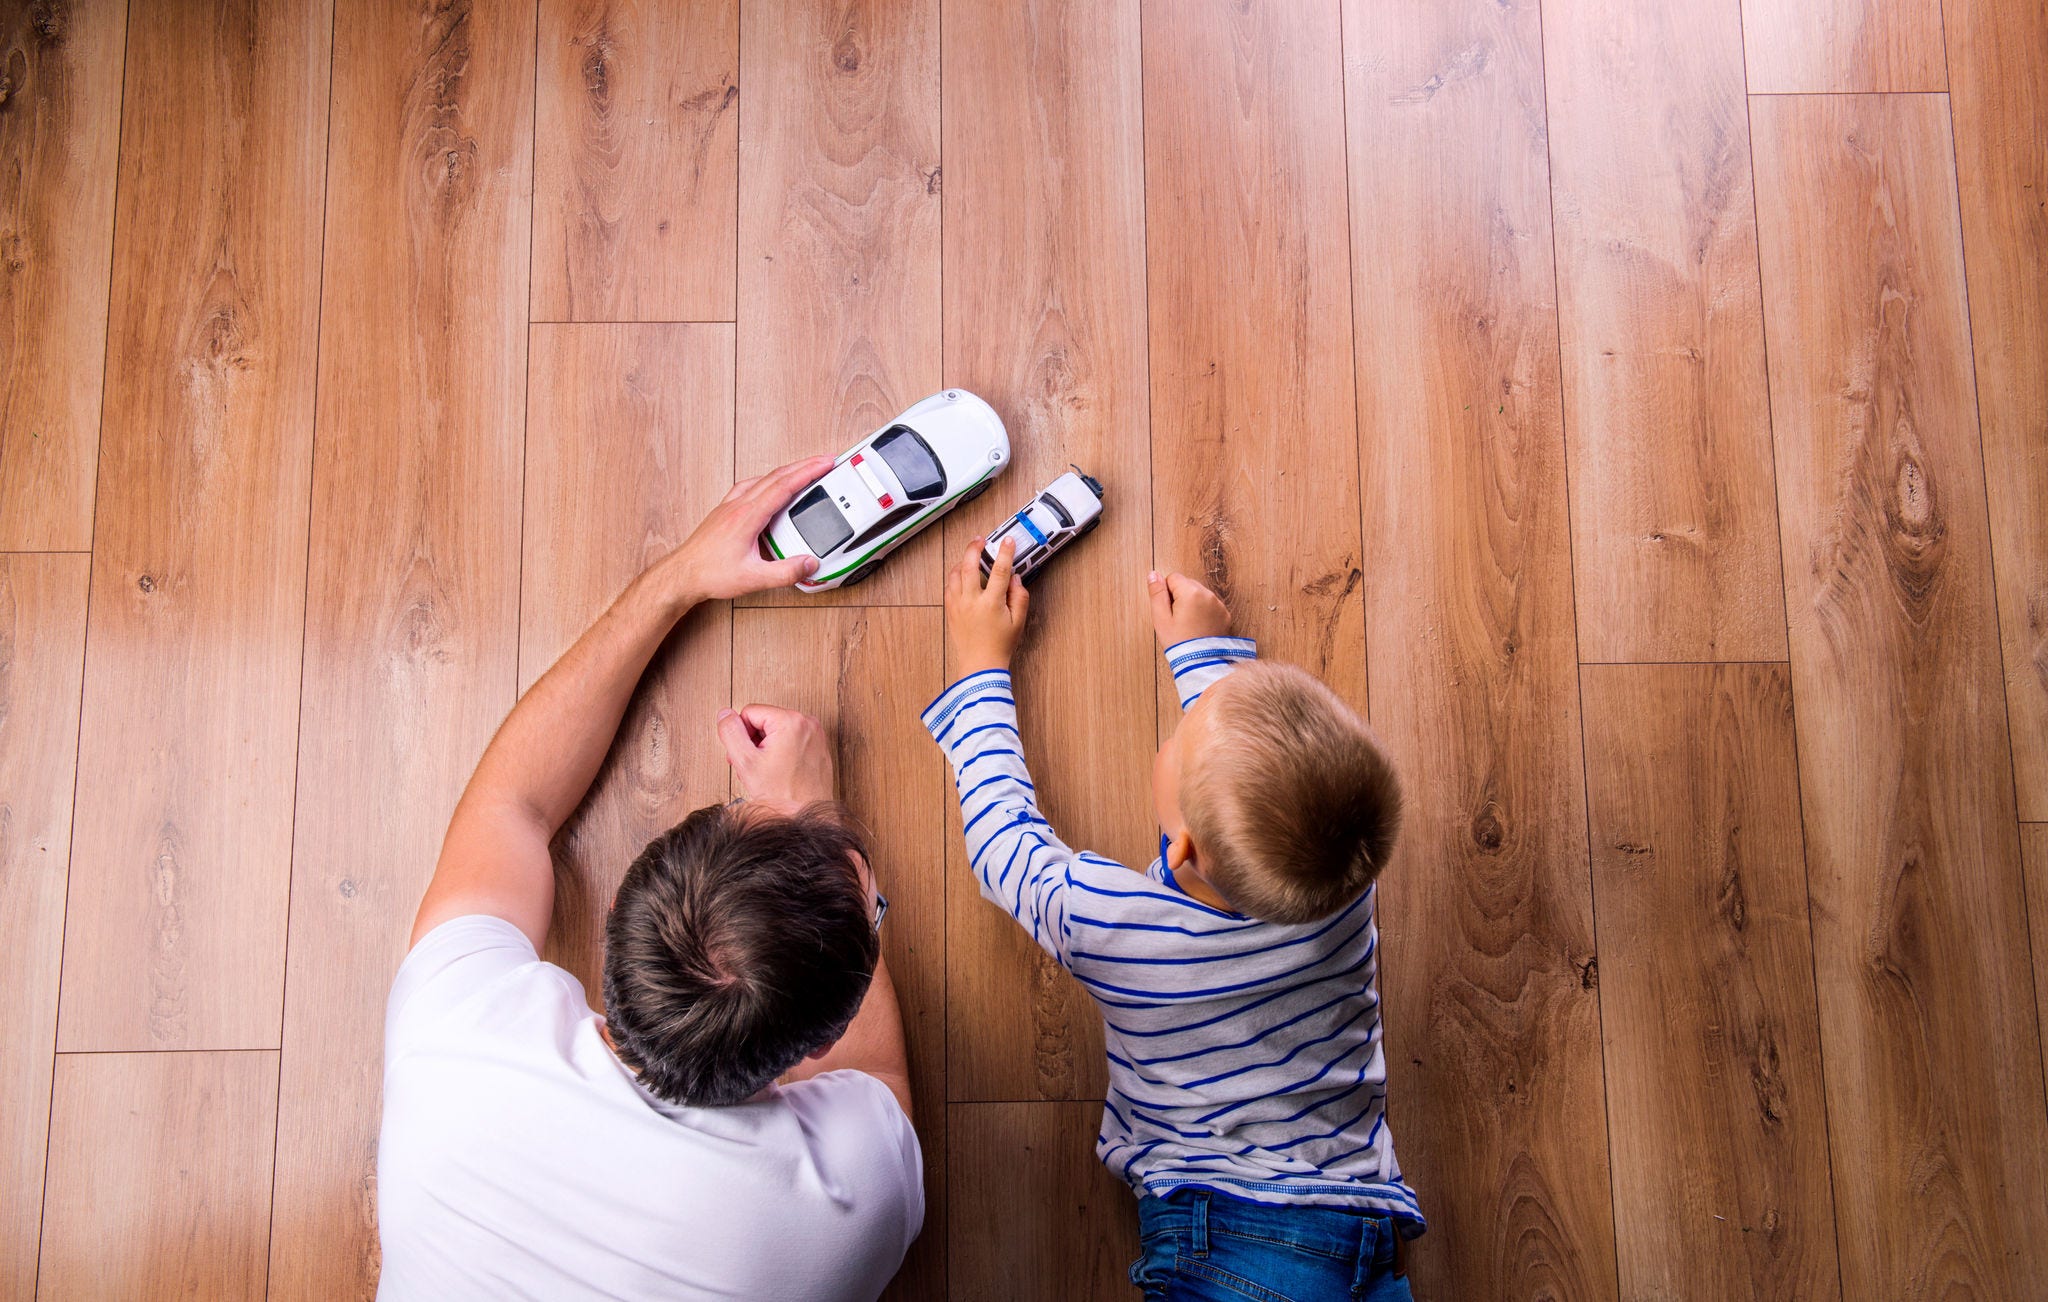 pai com seu filho brincando com carros no chão de madeira